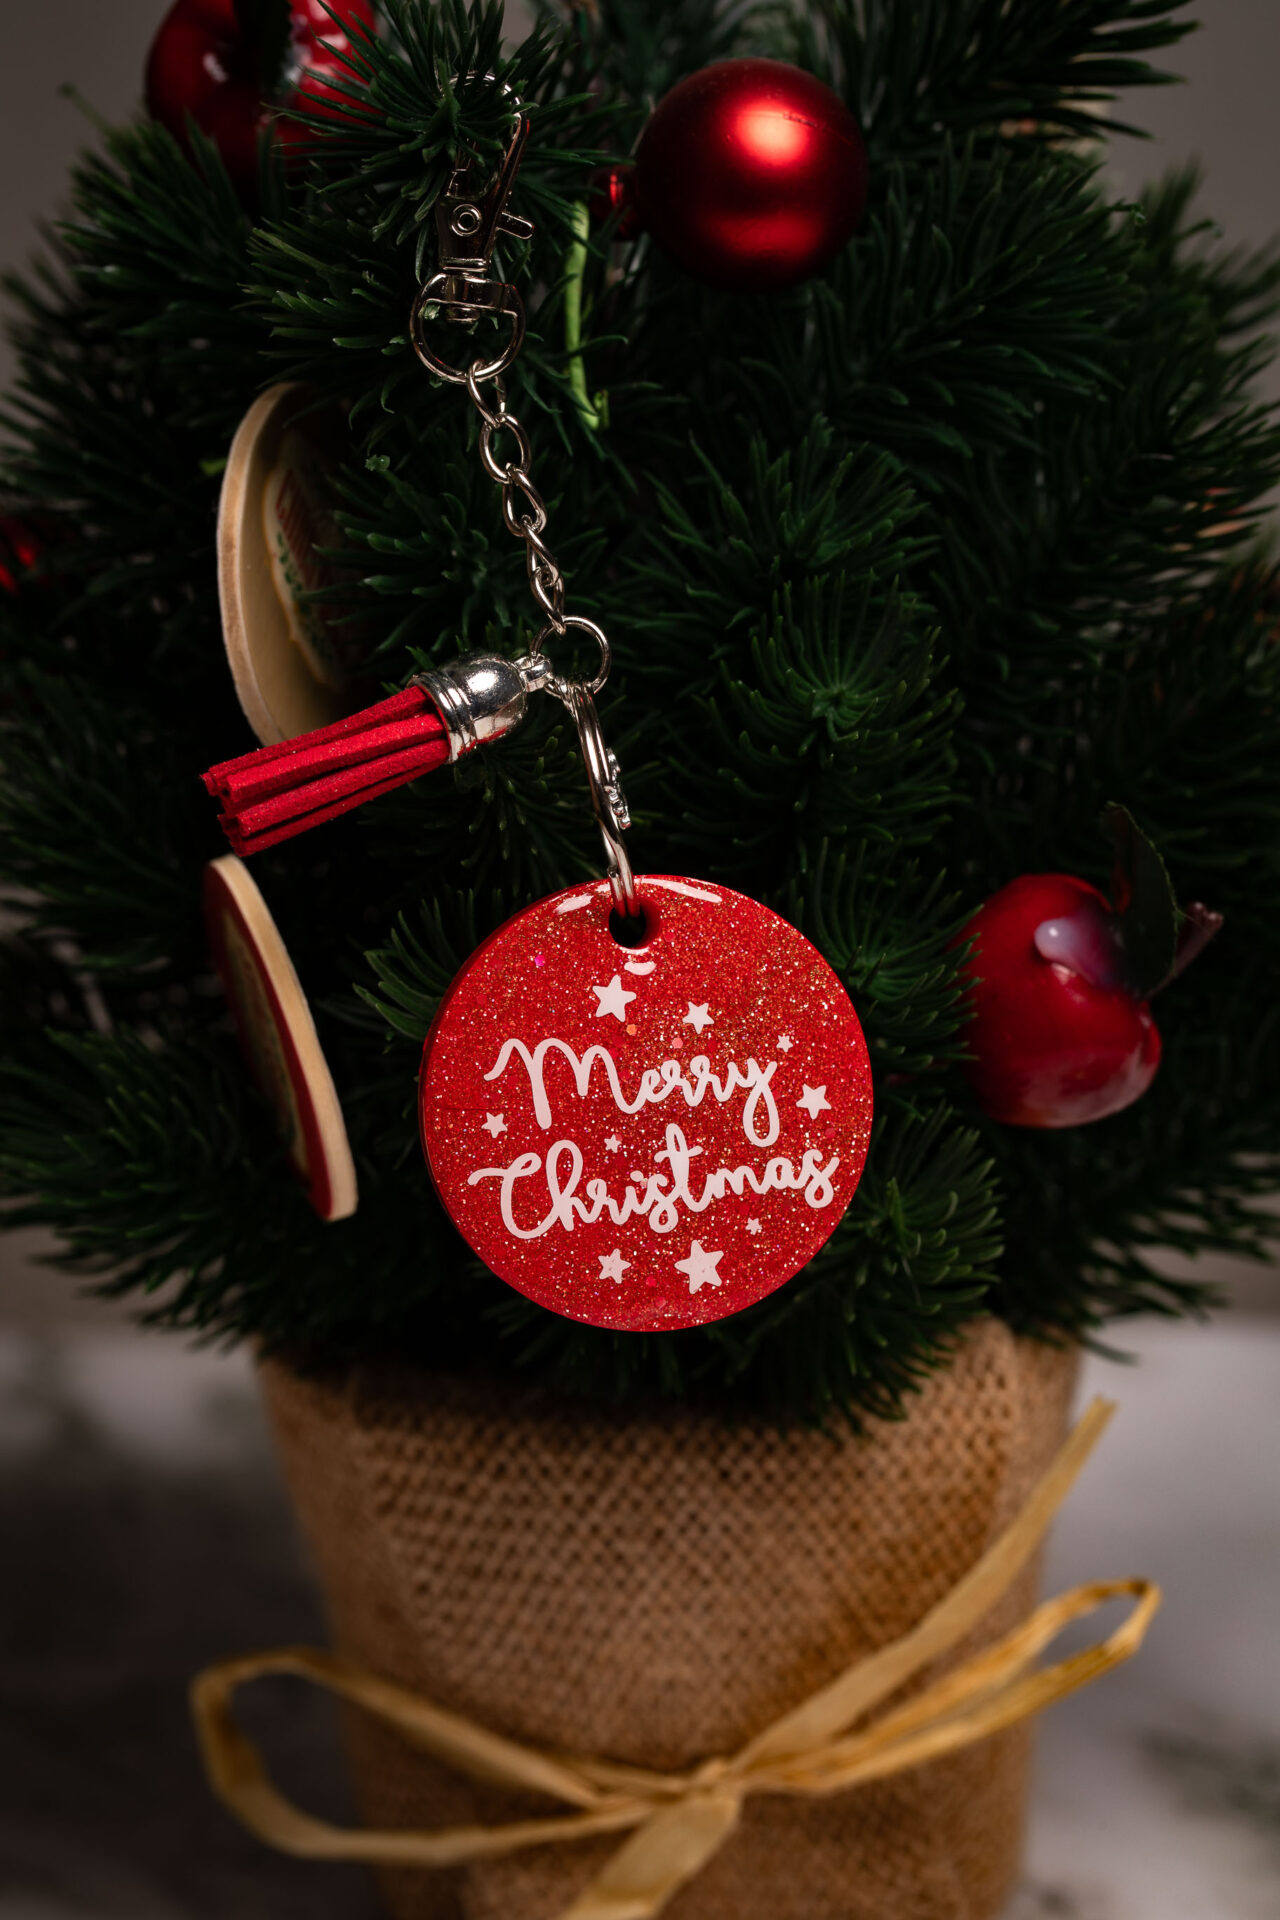 Porte clé avec inscription "Joyeux Noël" rouge - Boutique en ligne d'idées cadeaux et de décoration pour la fête des mères, la fêtes des pères ou pour un anniversaire enfant ou adulte, pour les fêtes de Noël ou pour tout autre occasion